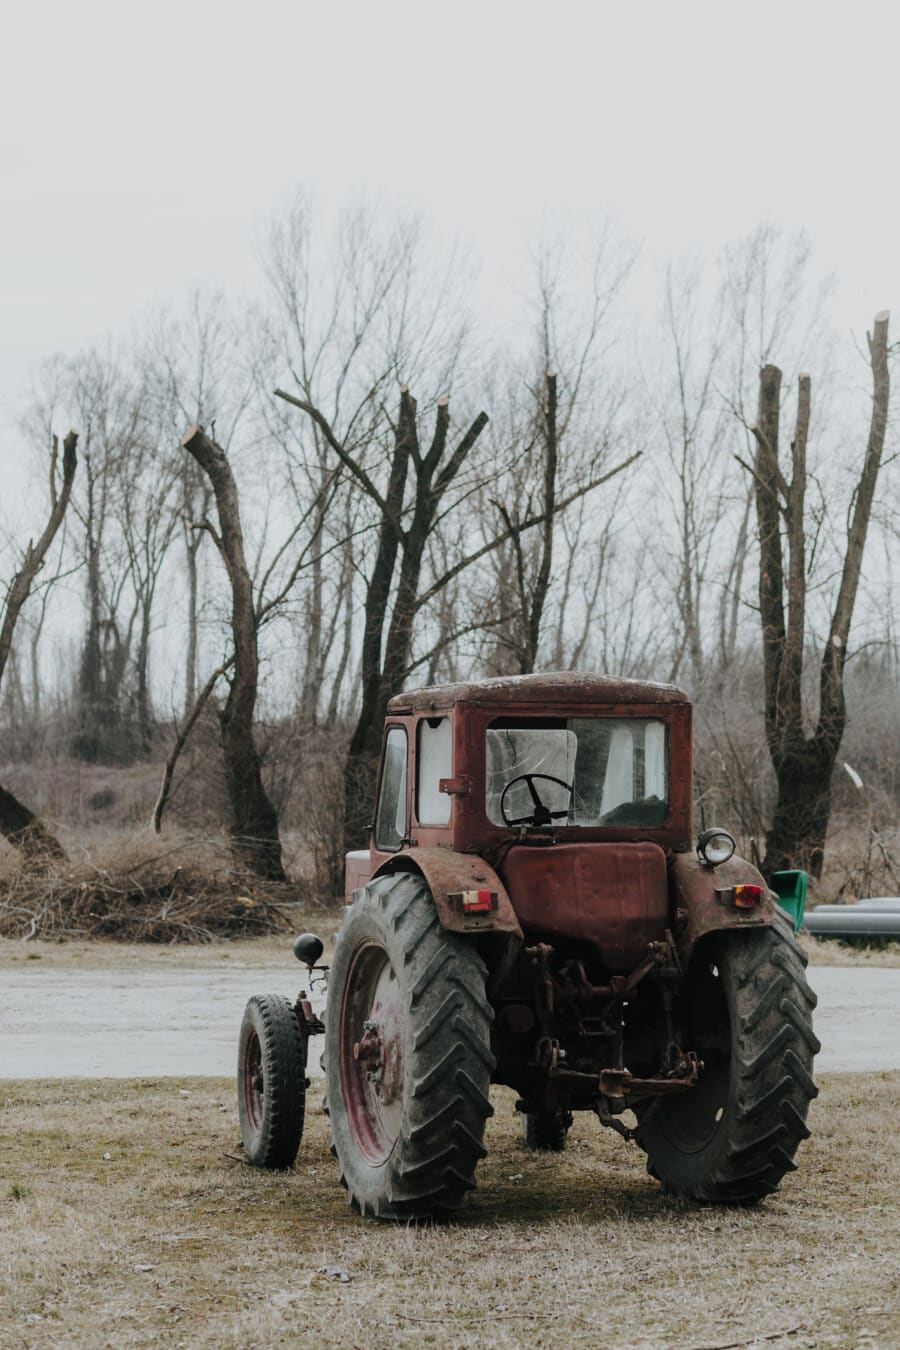 Traktor, Maschinen, Rost, alt, Fahrzeug, Maschine, Bauernhof, Natur, Landwirtschaft, des ländlichen Raums